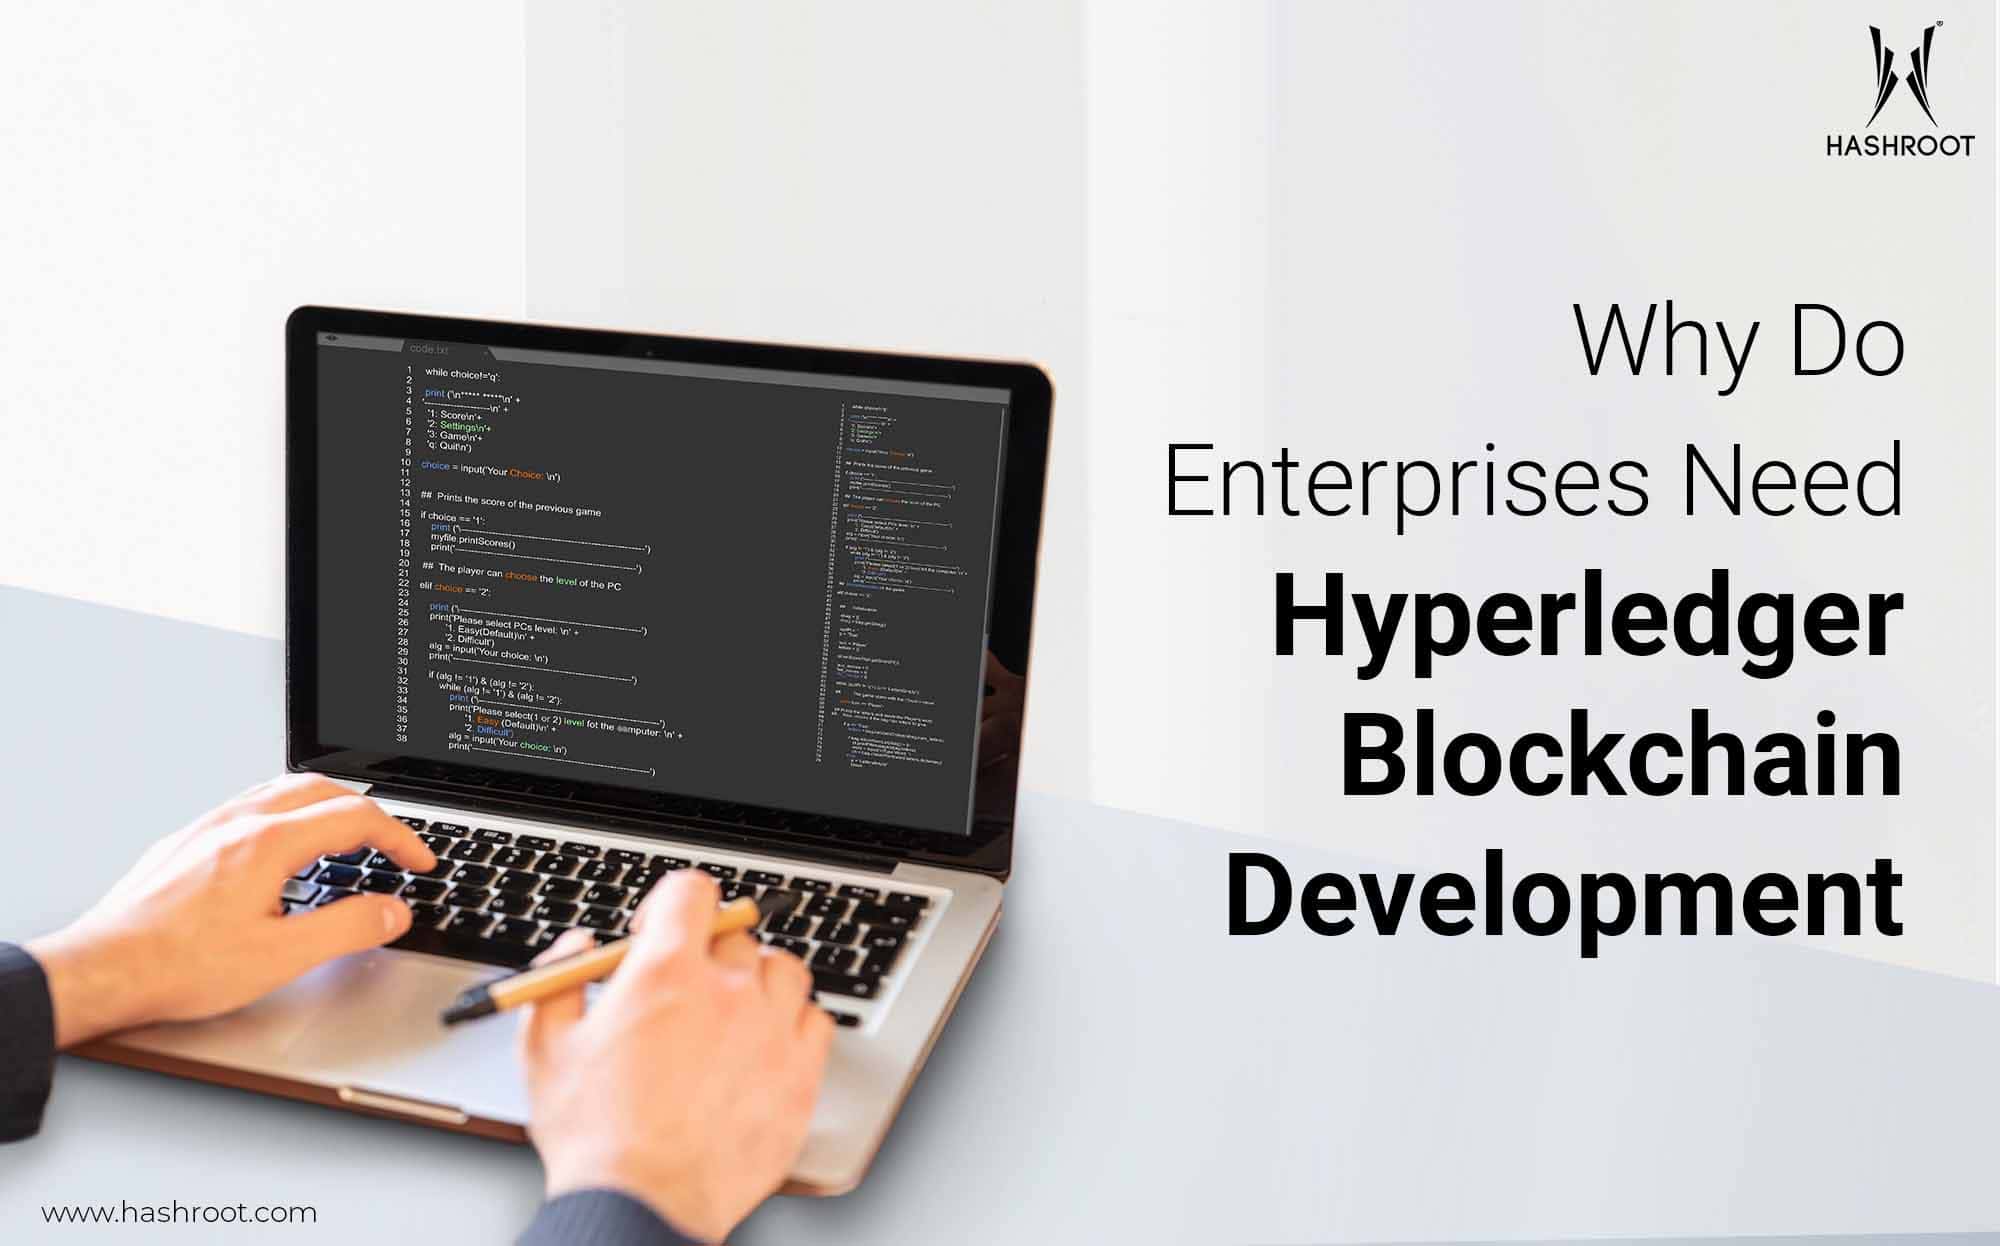 Why Do Enterprises Need Hyperledger Blockchain Development